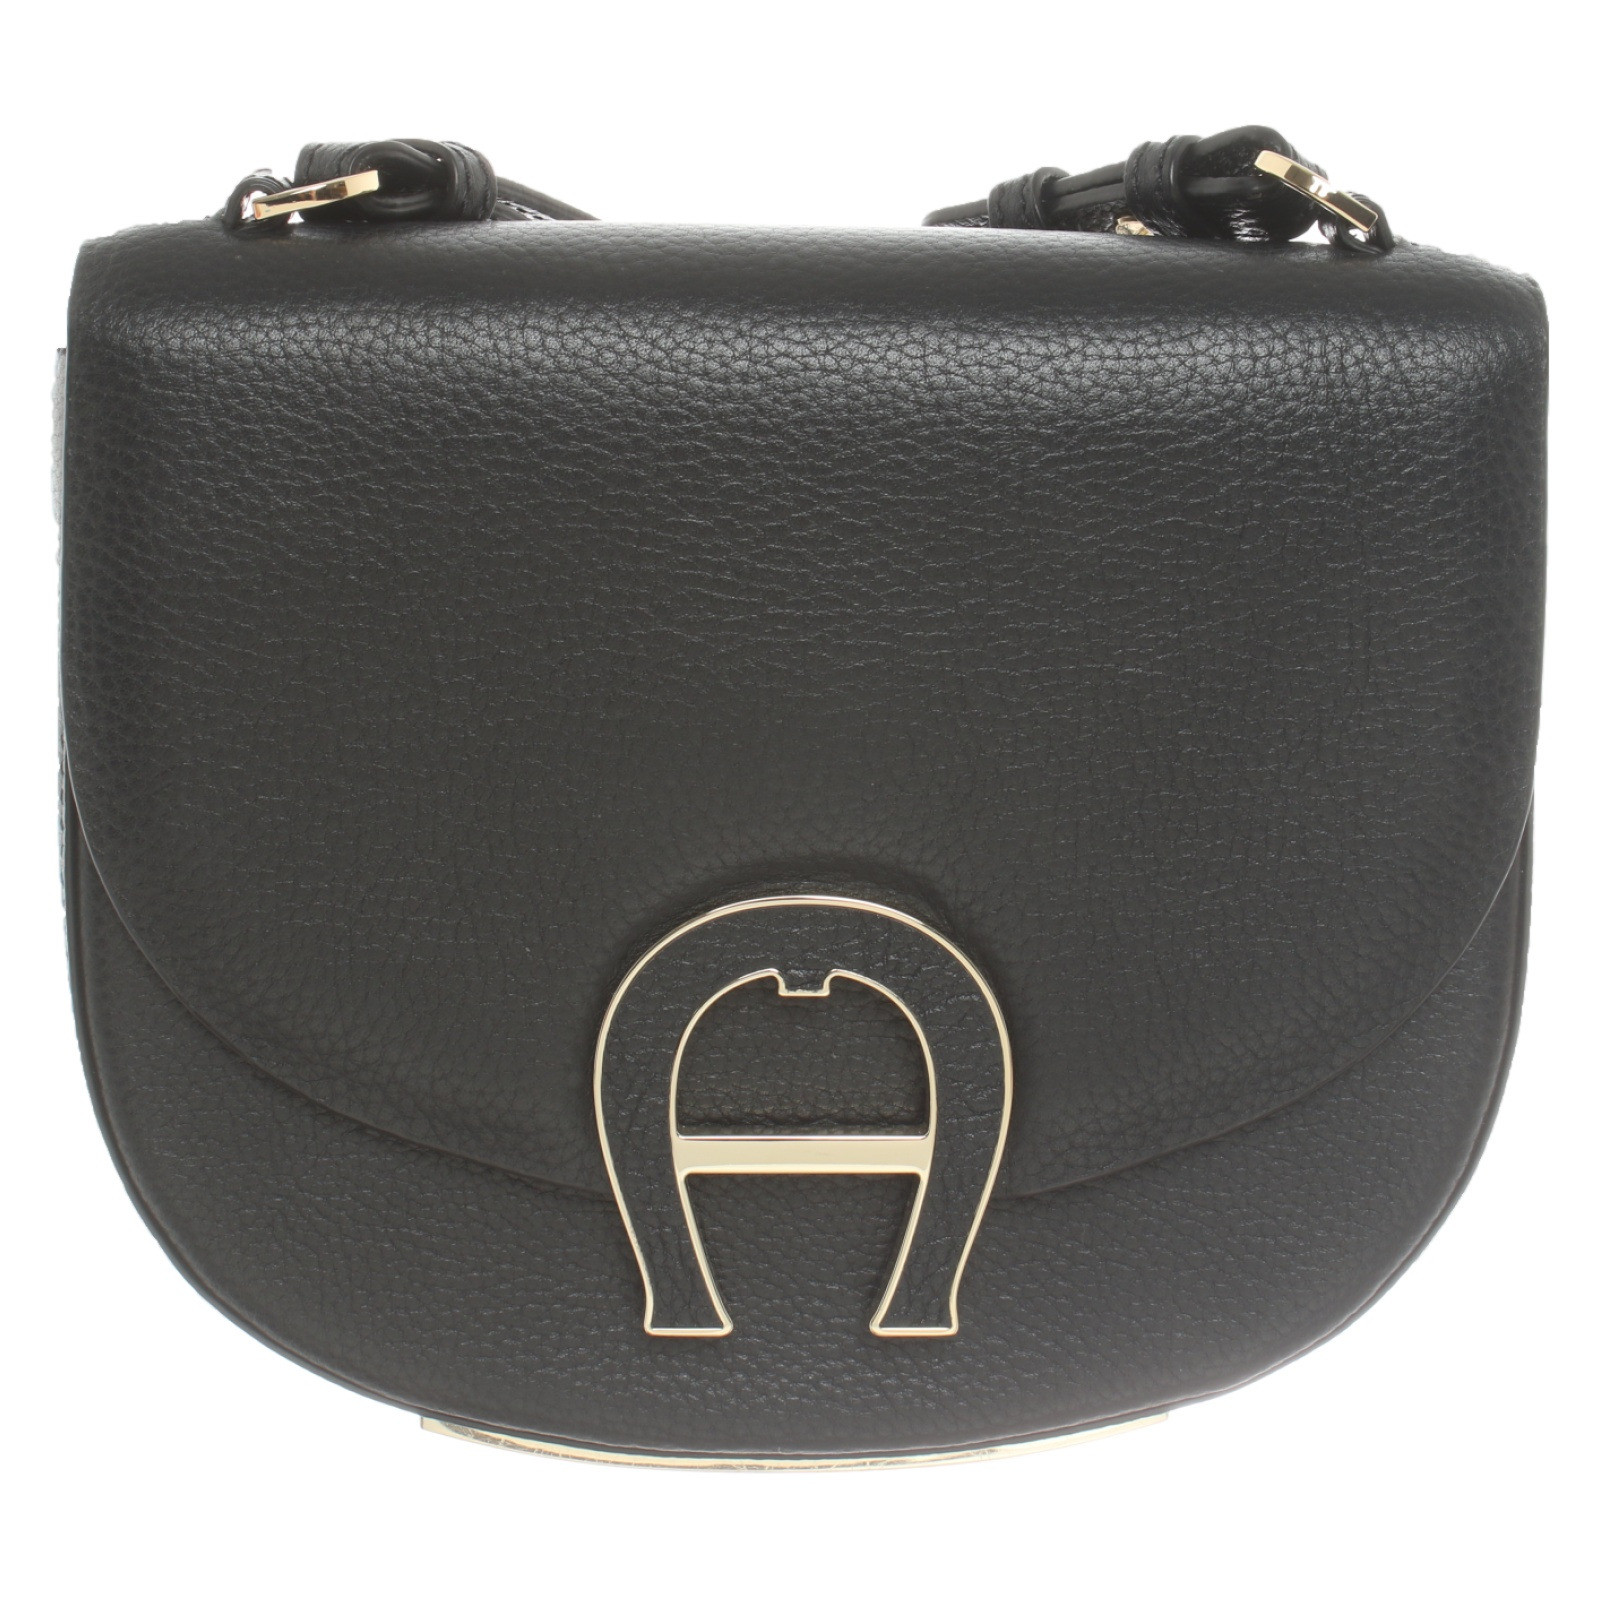 Aigner Shoulder bag Leather in Black - Second Hand Aigner bag Leather in Black gebraucht kaufen für 149€ (6237255)